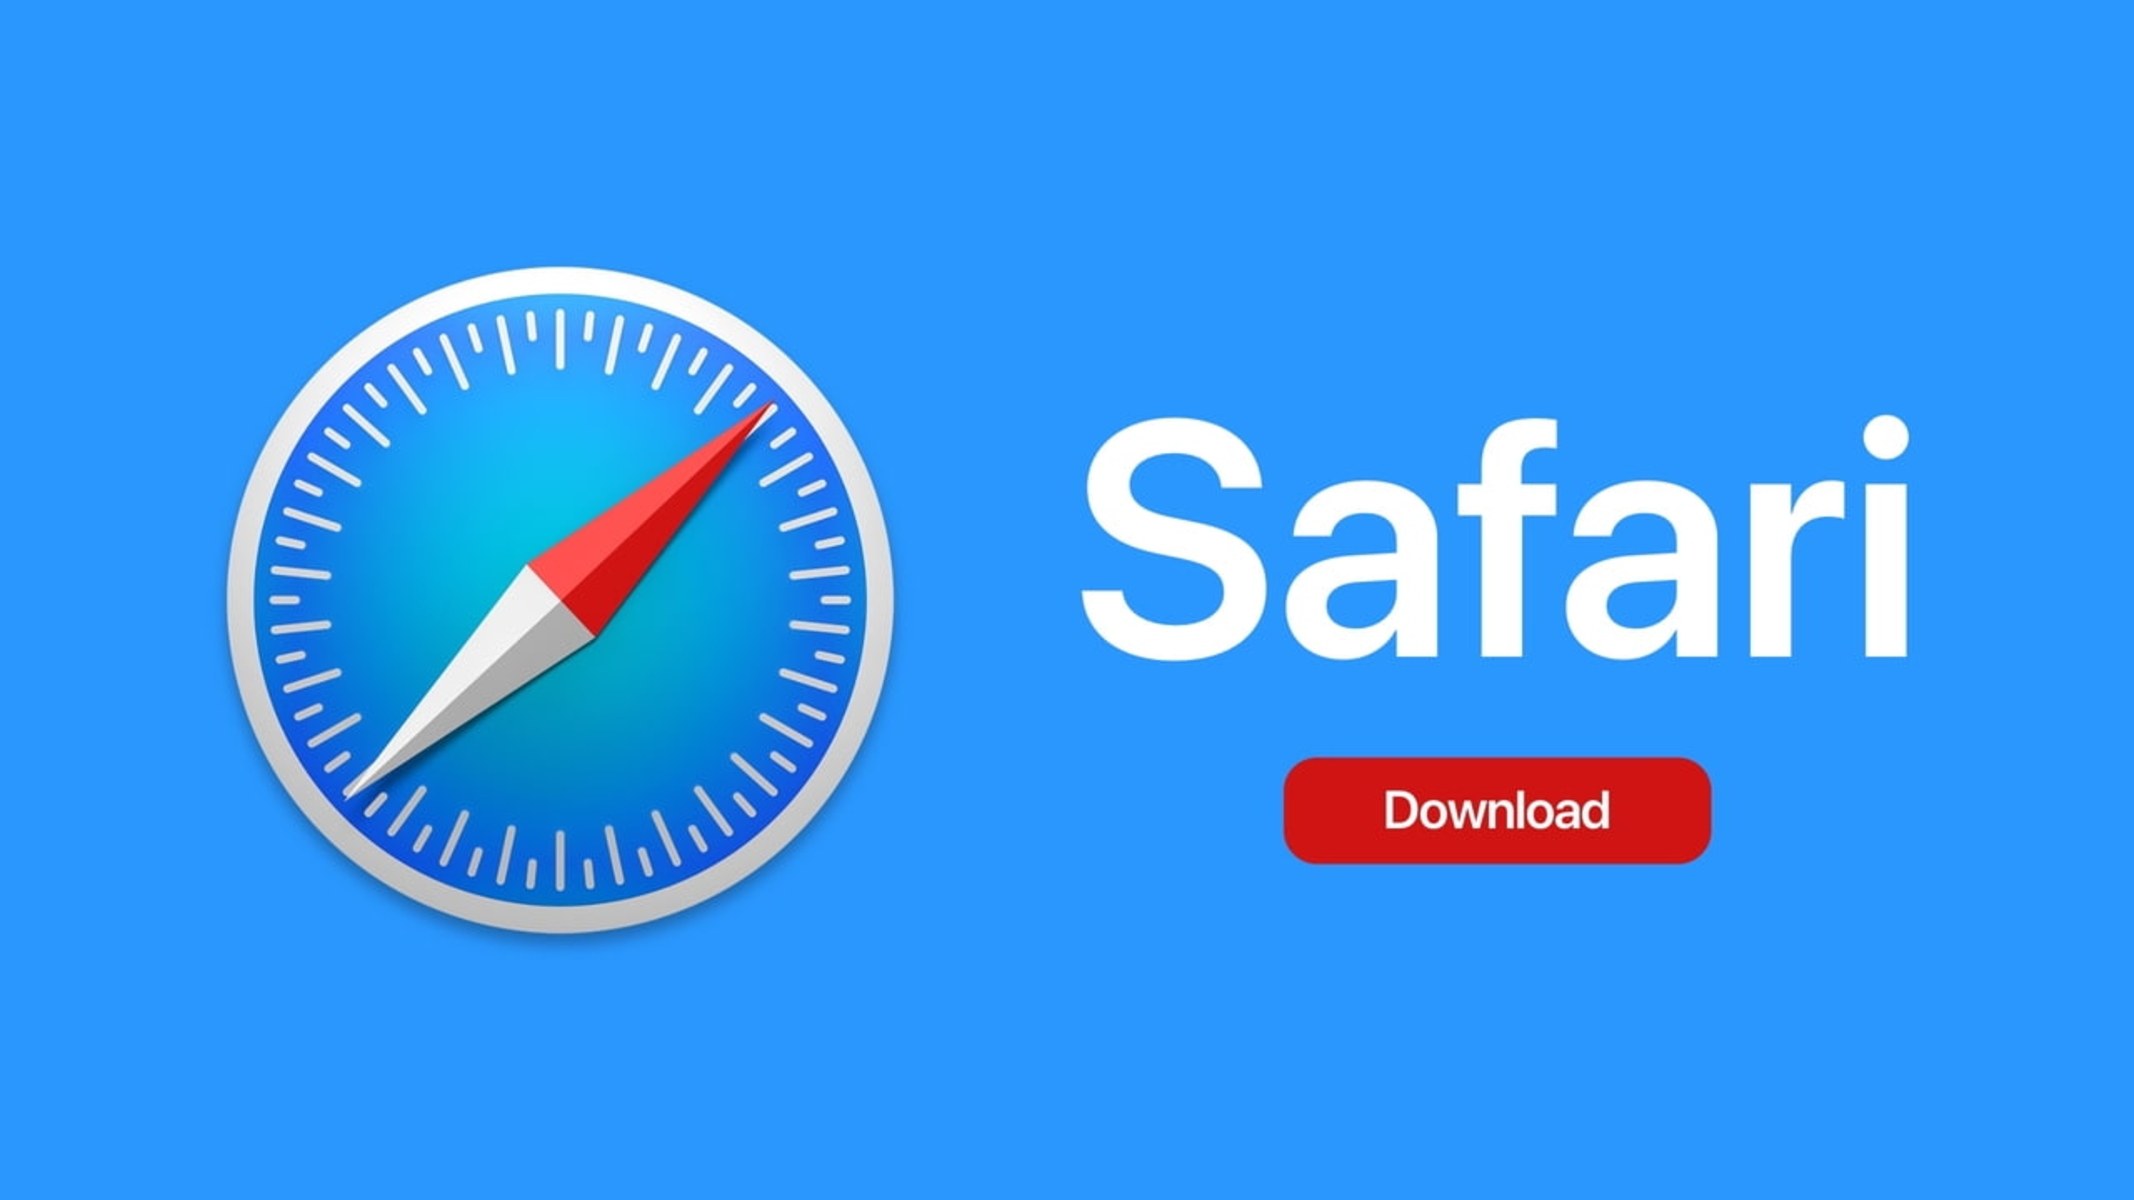 Where Are Safari Downloads